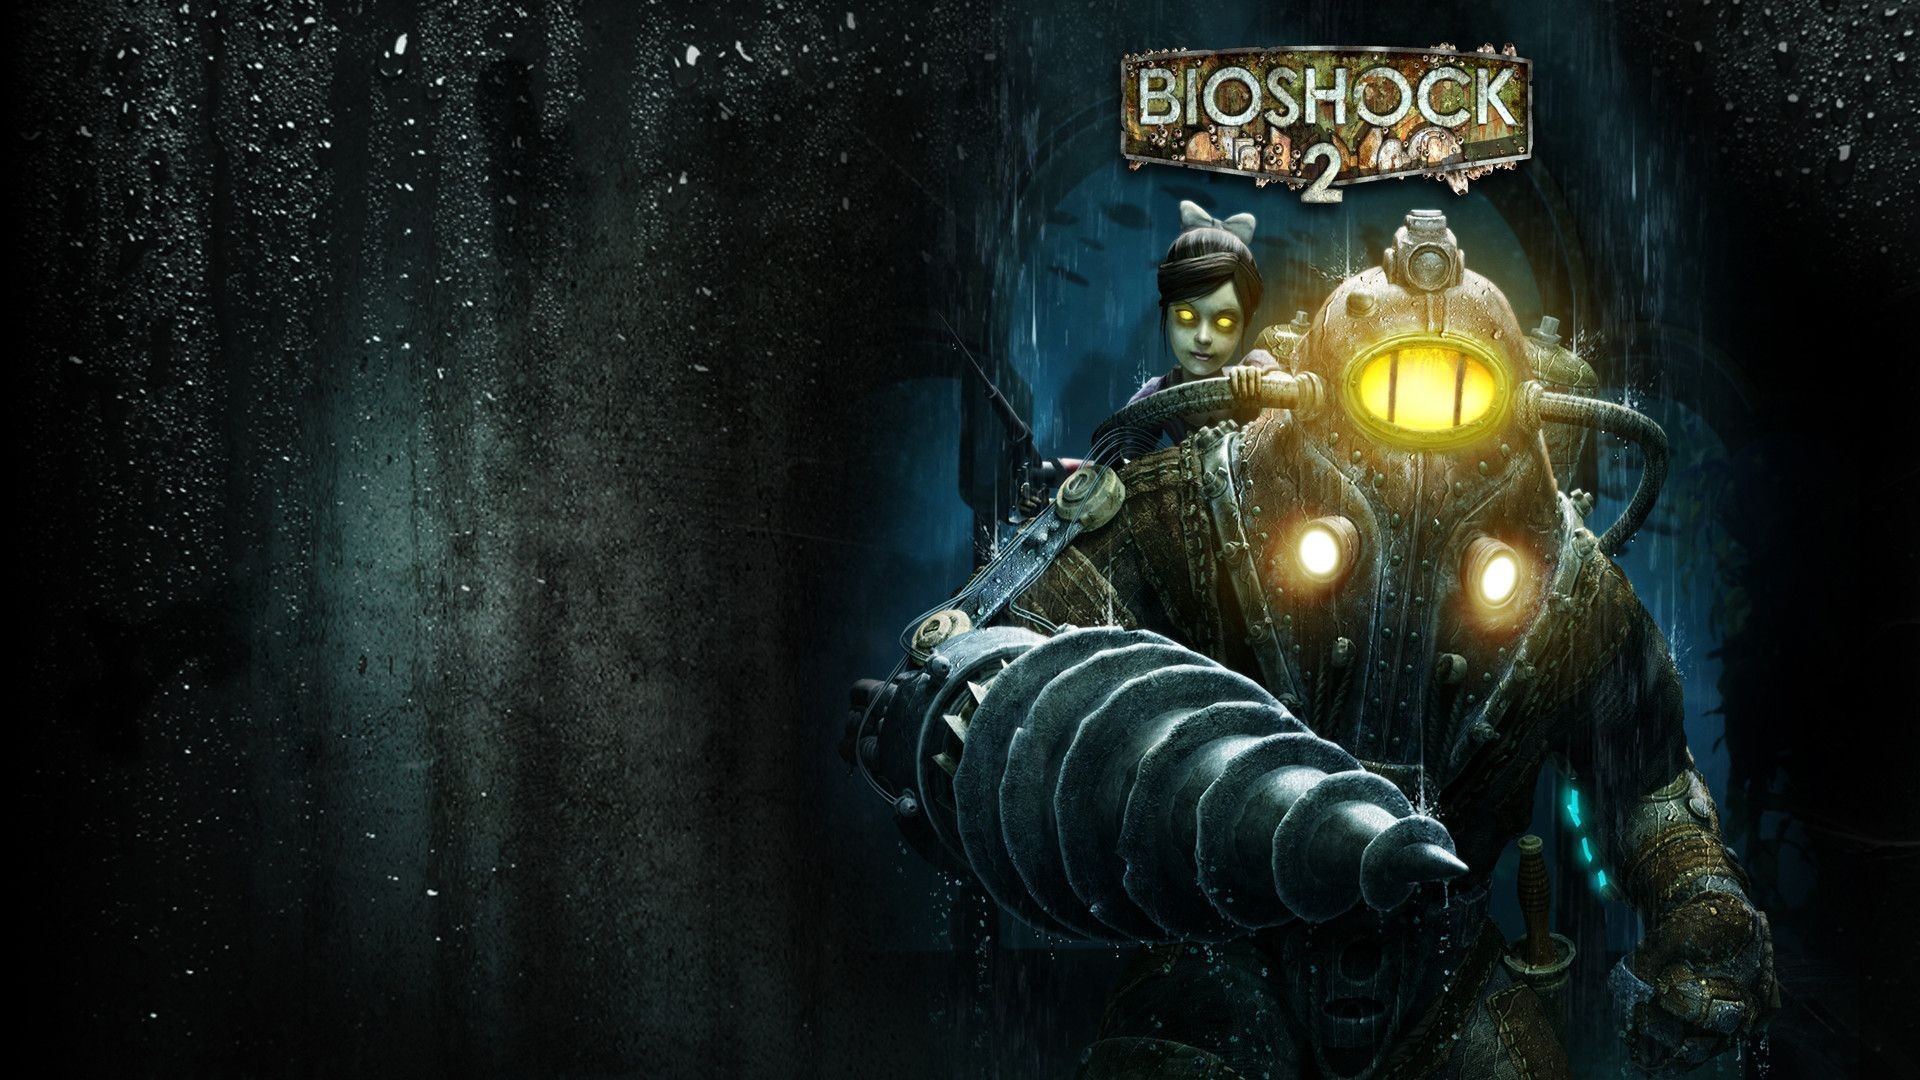 1920x1080 Bioshock 2 Wallpapers, HD Widescreen Bioshock 2 Wallpapers - EME-HDQ Cover  Pics